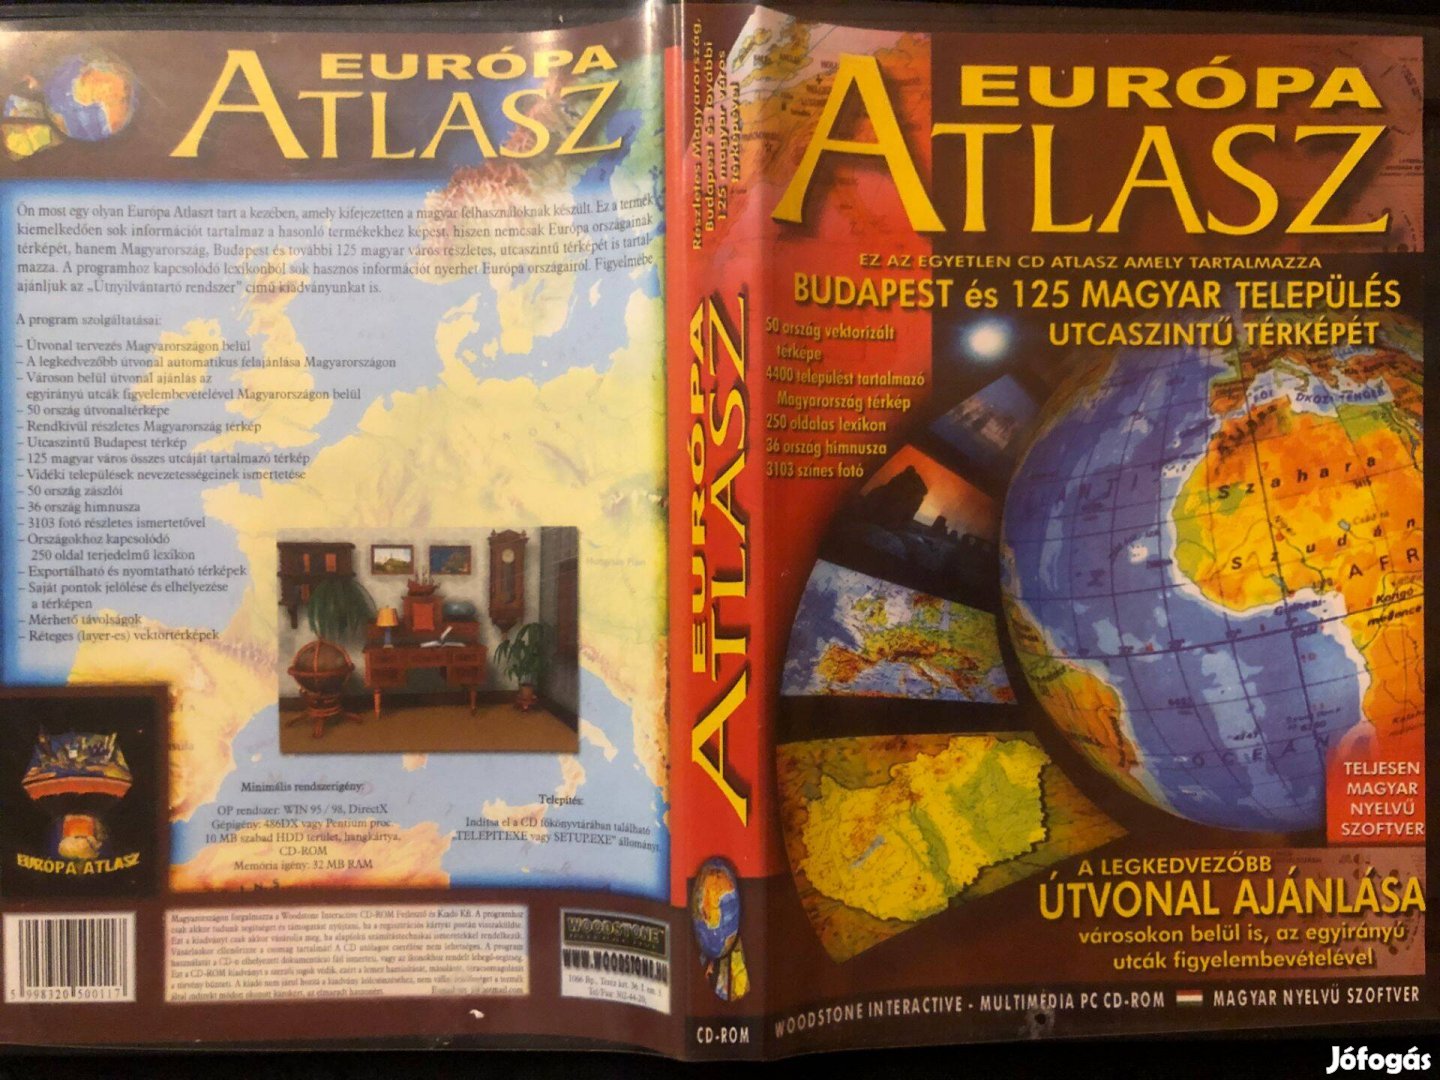 Európa atlasz (Budapest és 125 település utcaszintű térképe) PC